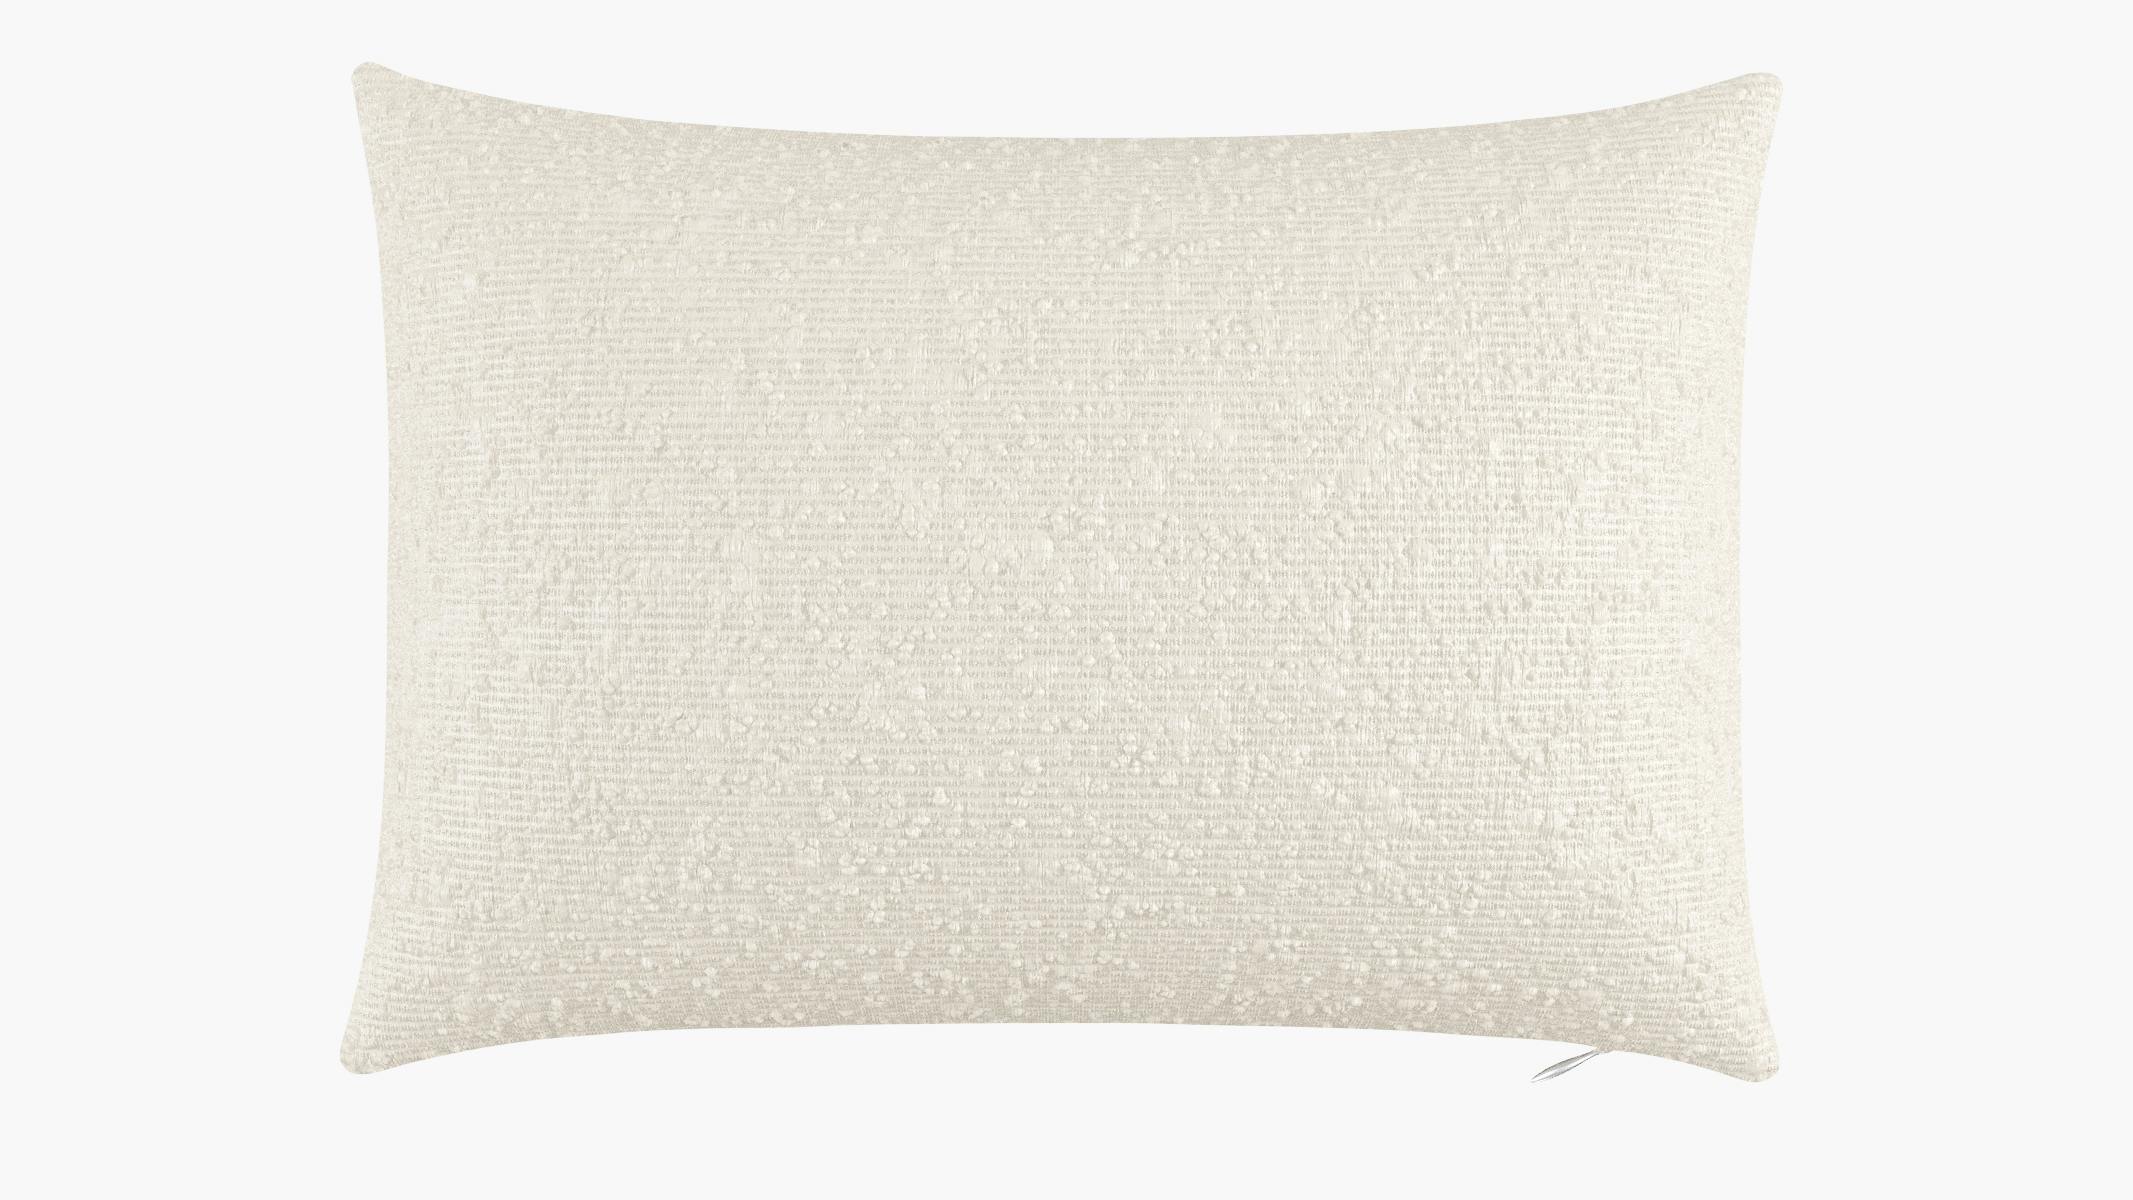 Pillow - 14 x 20 in. lumbar